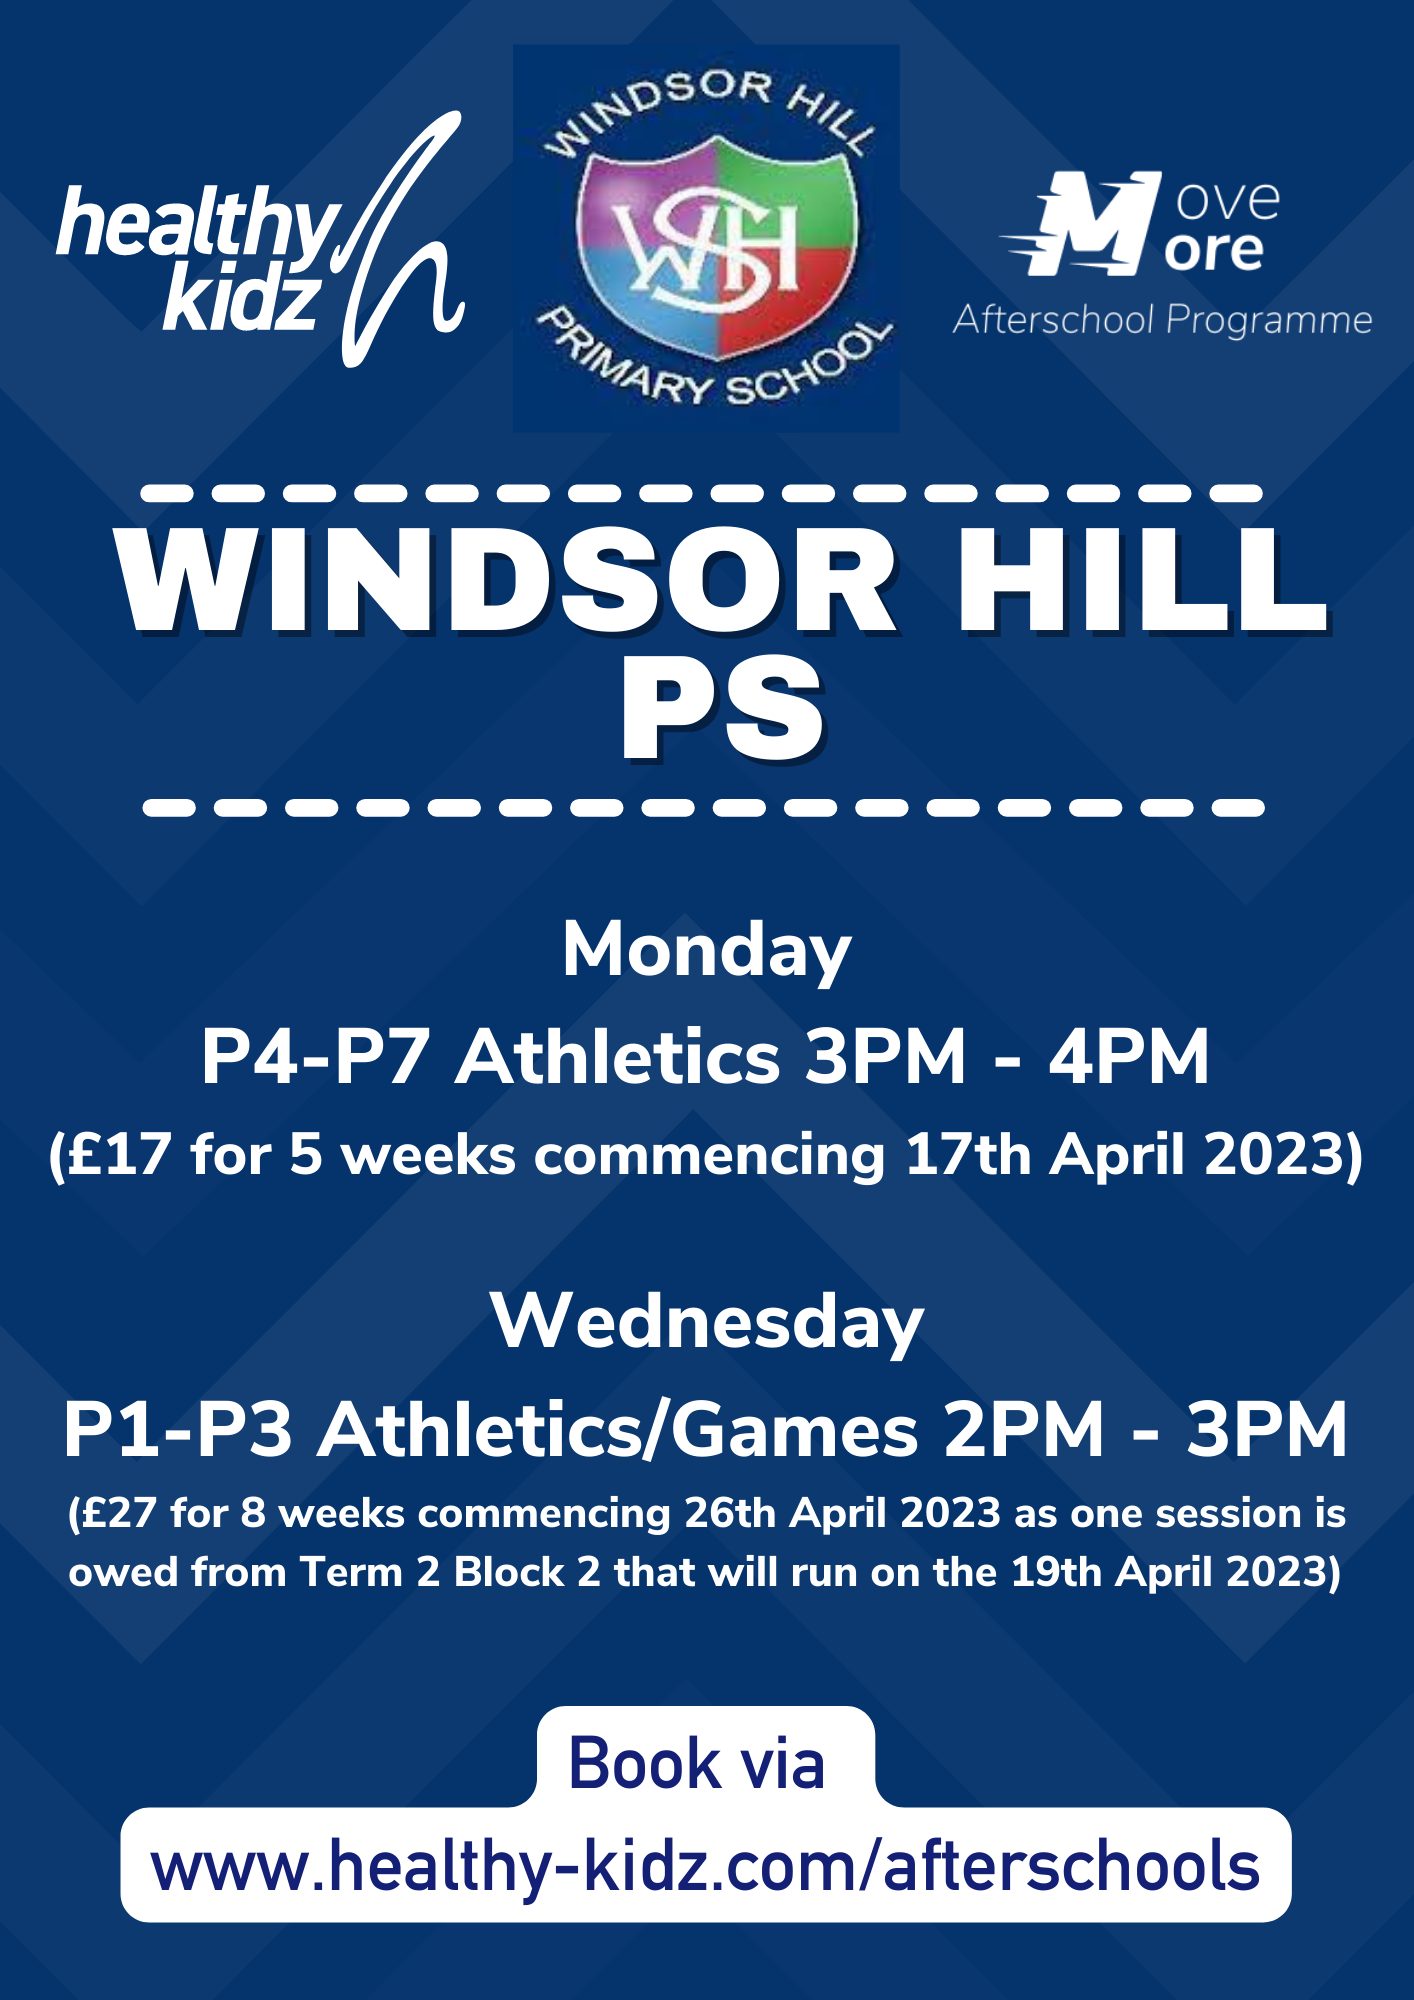 Healthy Kidz Afterschools at Windsor Hill PS Term 3 (2022/23)